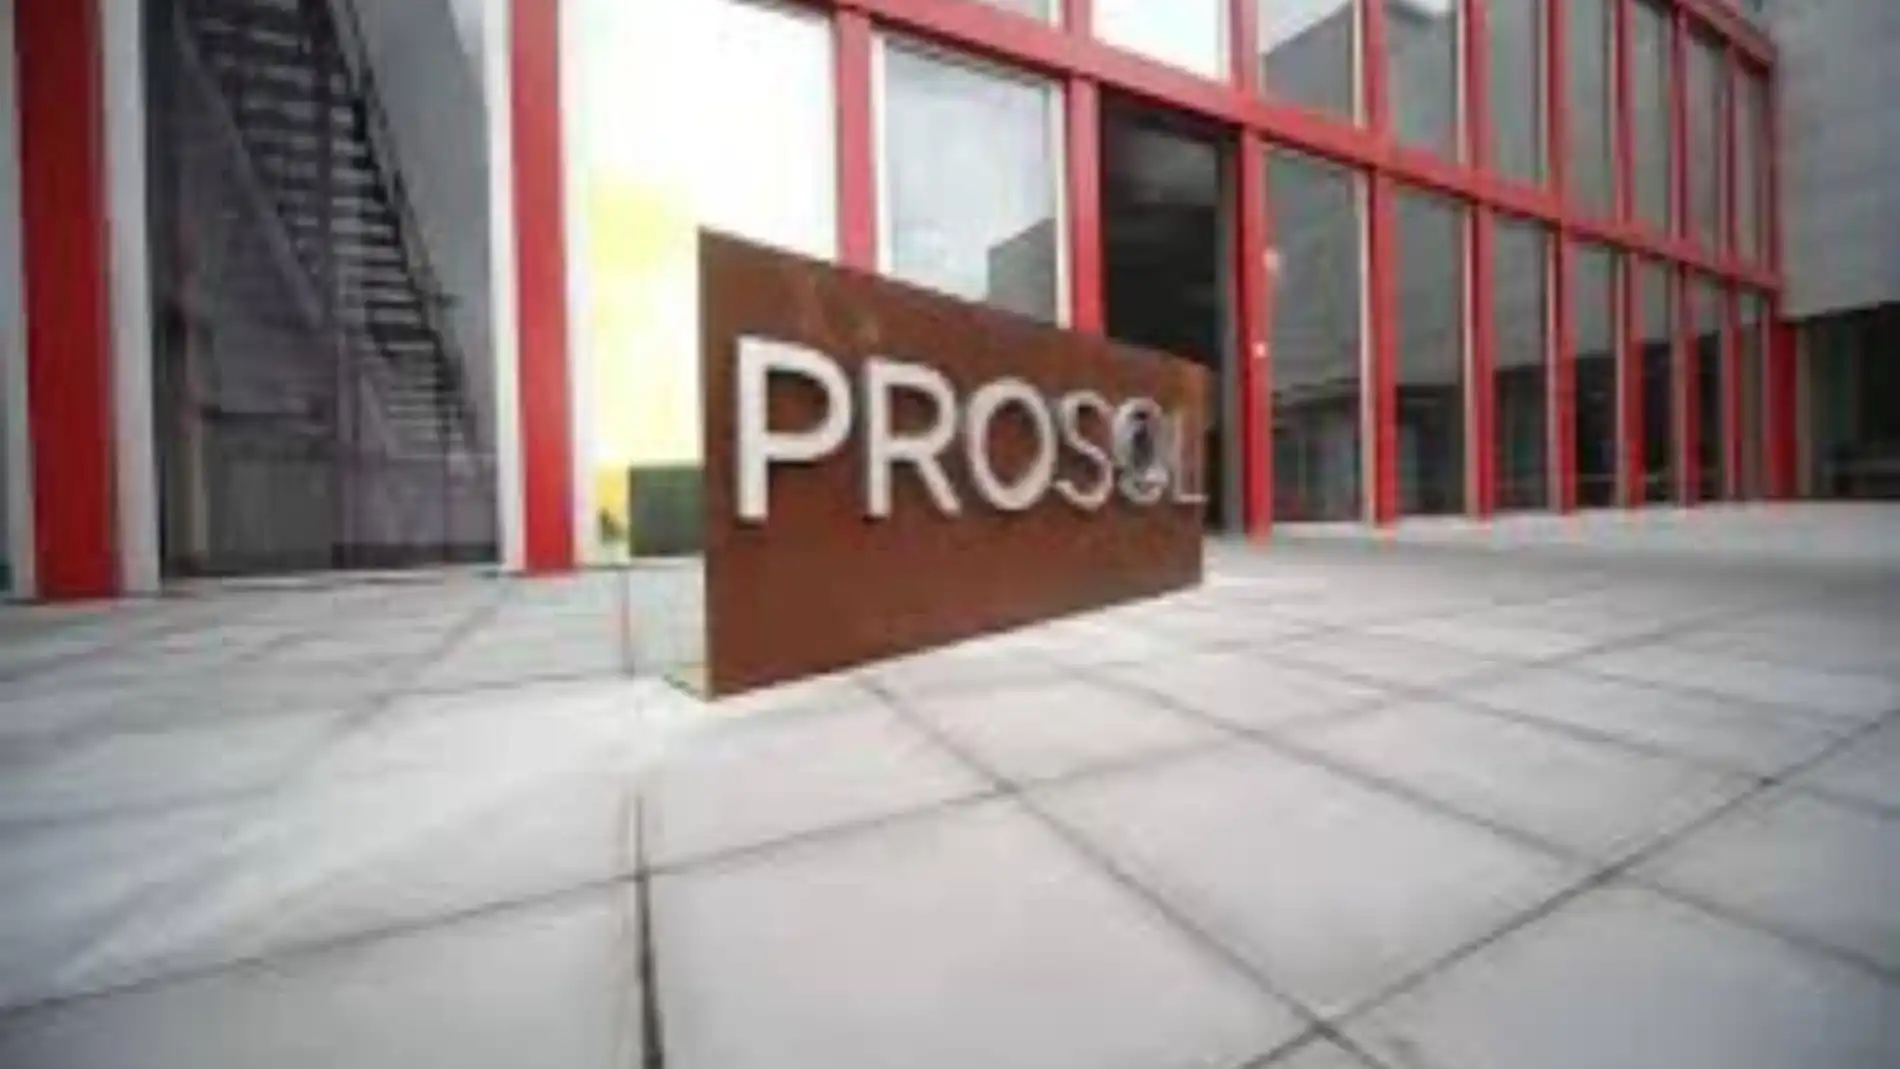 PROSOL se alza con el Premio Forbes-Credit Suisse Sustainability en la categoría de Alimentación